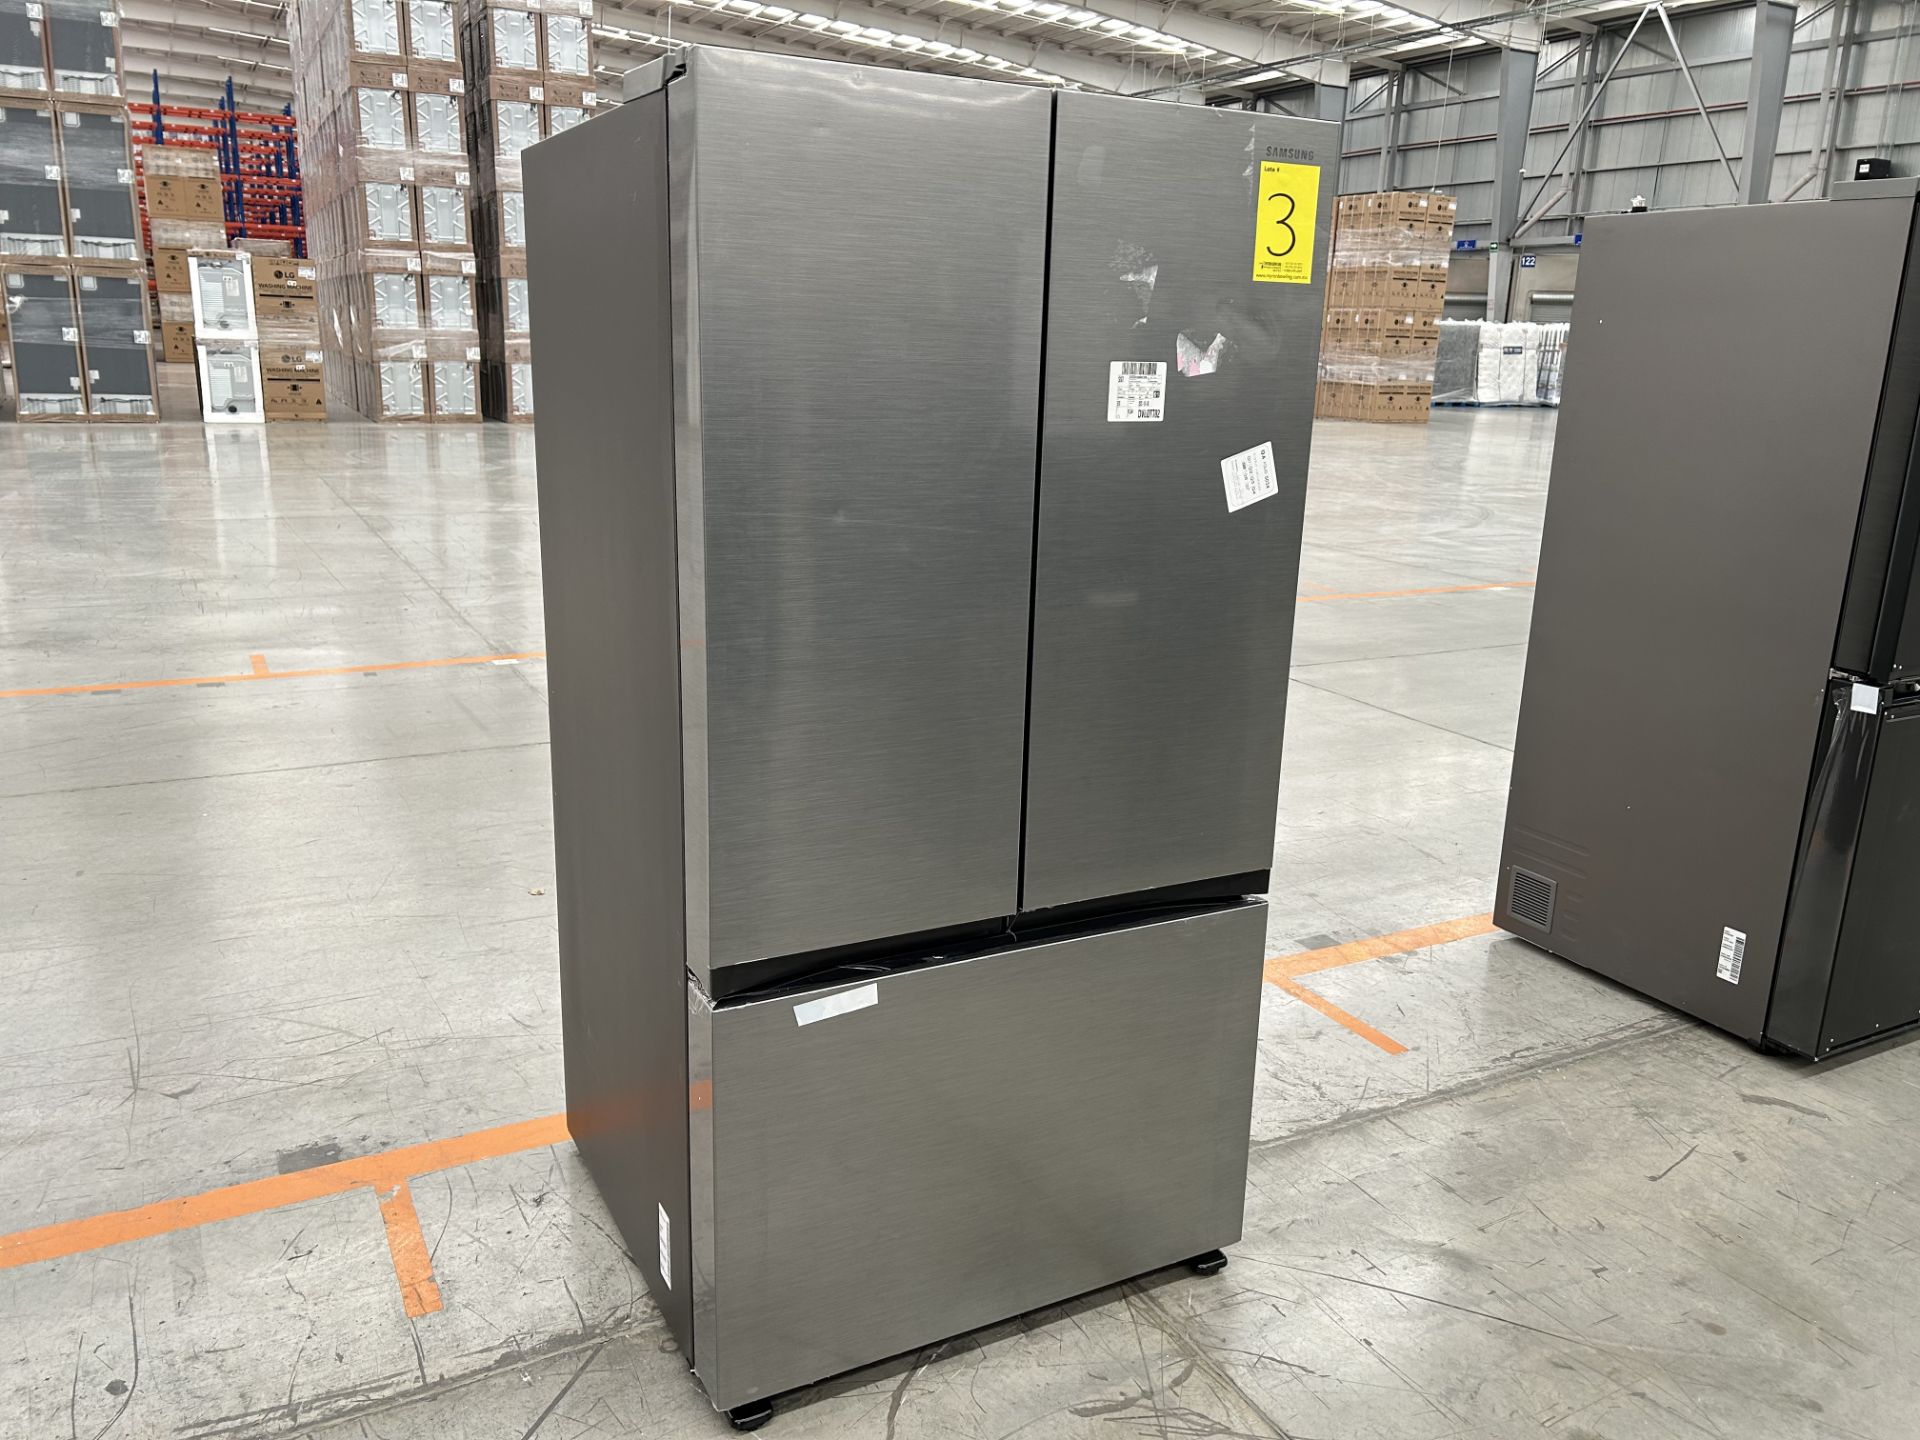 Lote de 1 Refrigerador Marca SAMSUNG, Modelo RF32CG5A10S9EM, Serie 900196X, Color GRIS (No se asegu - Image 3 of 5